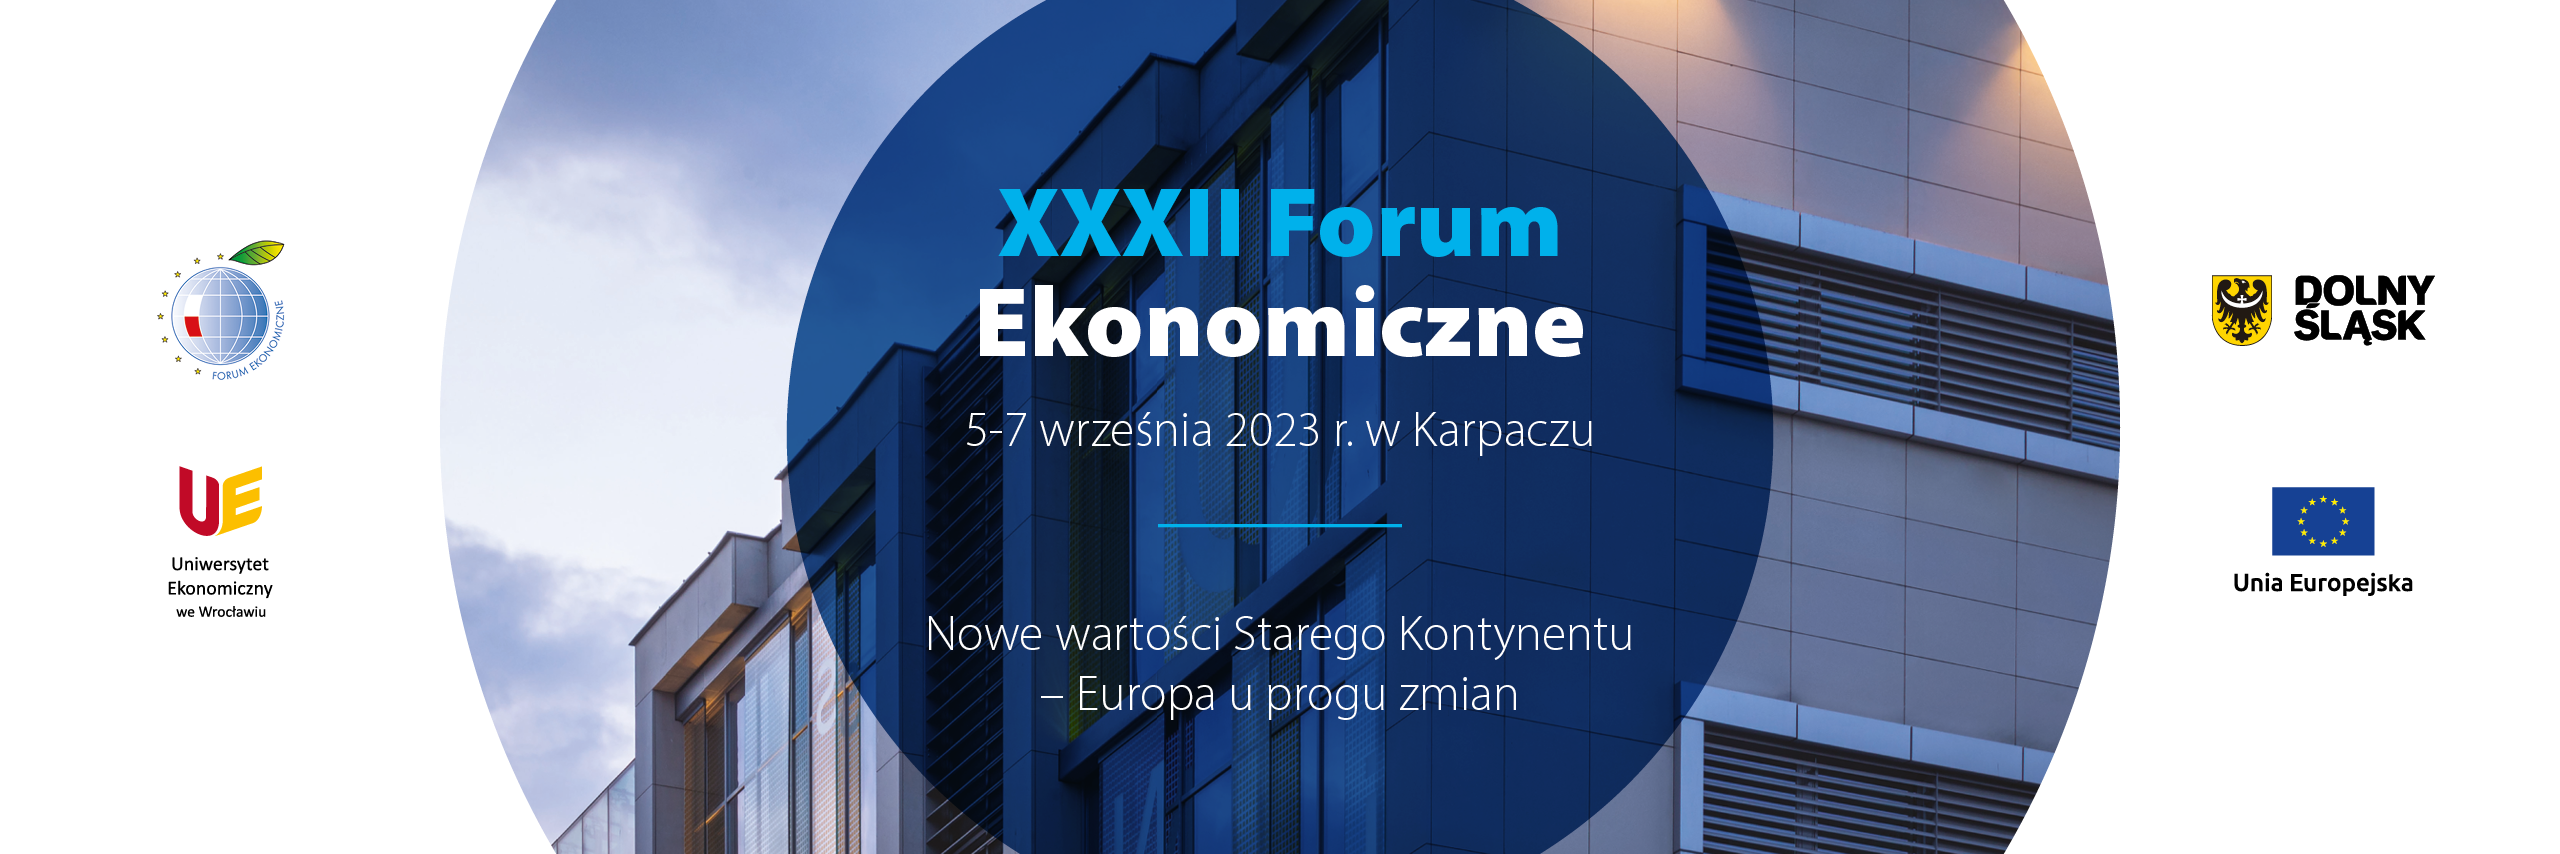 xxxii-forum-ekonomiczne-slider